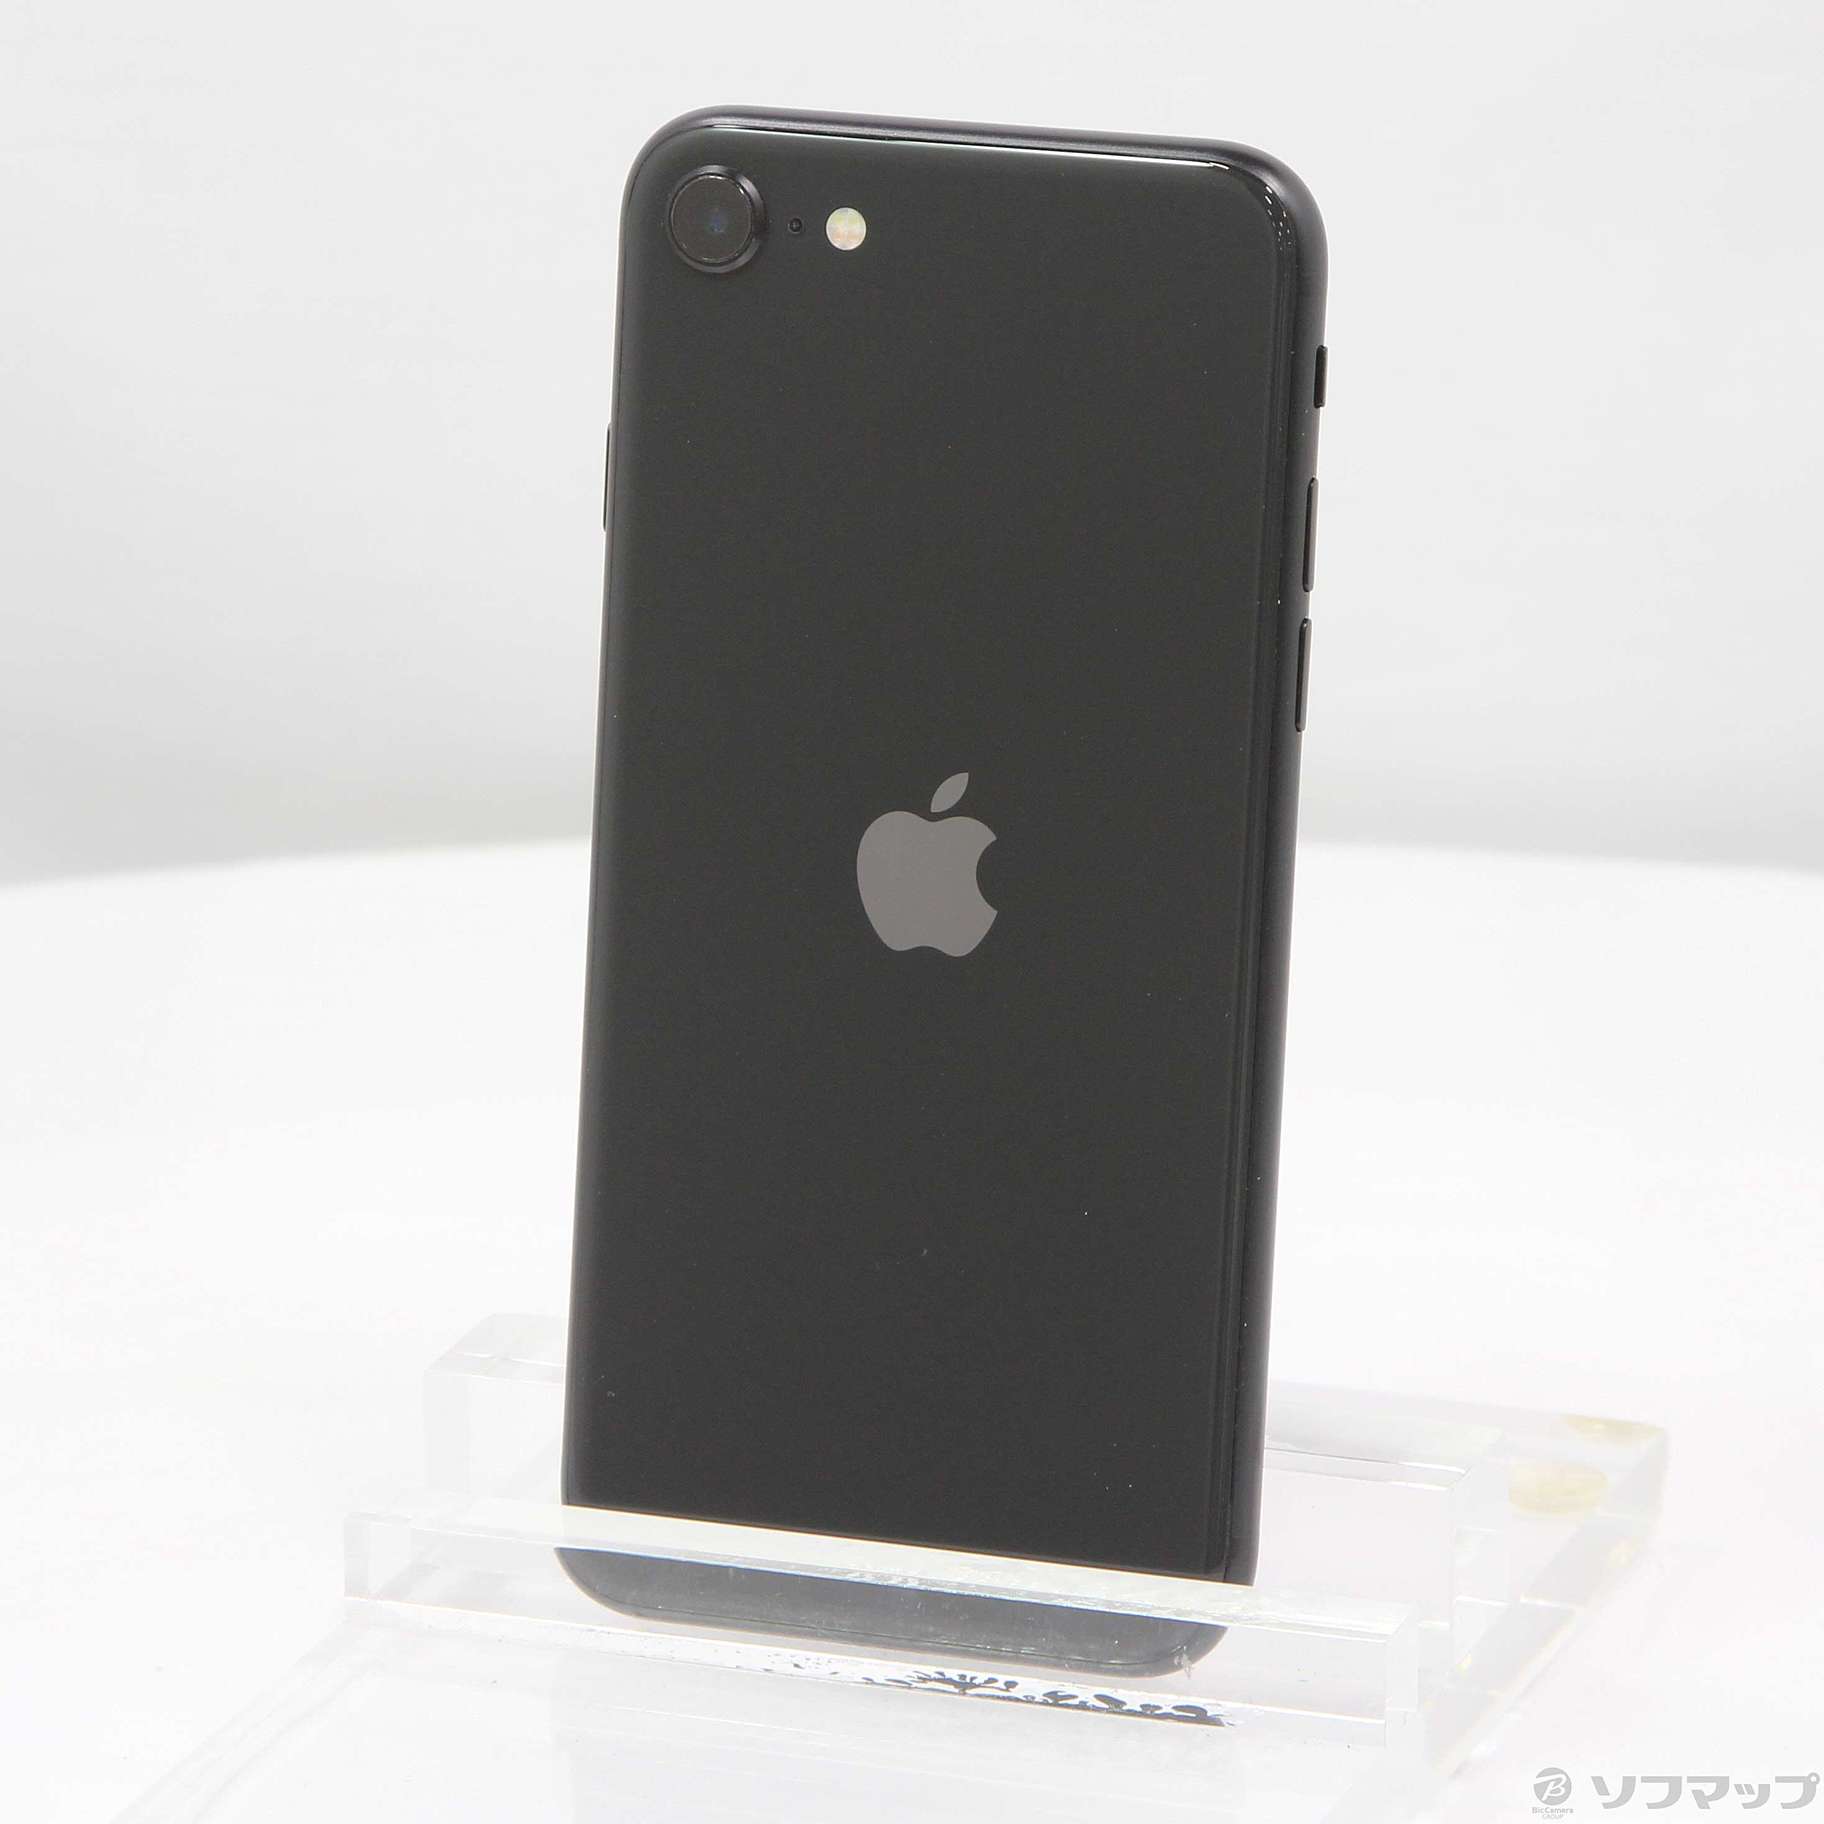 Apple アップル iPhone SE 第2世代 64GB 黒 SIMフリー-